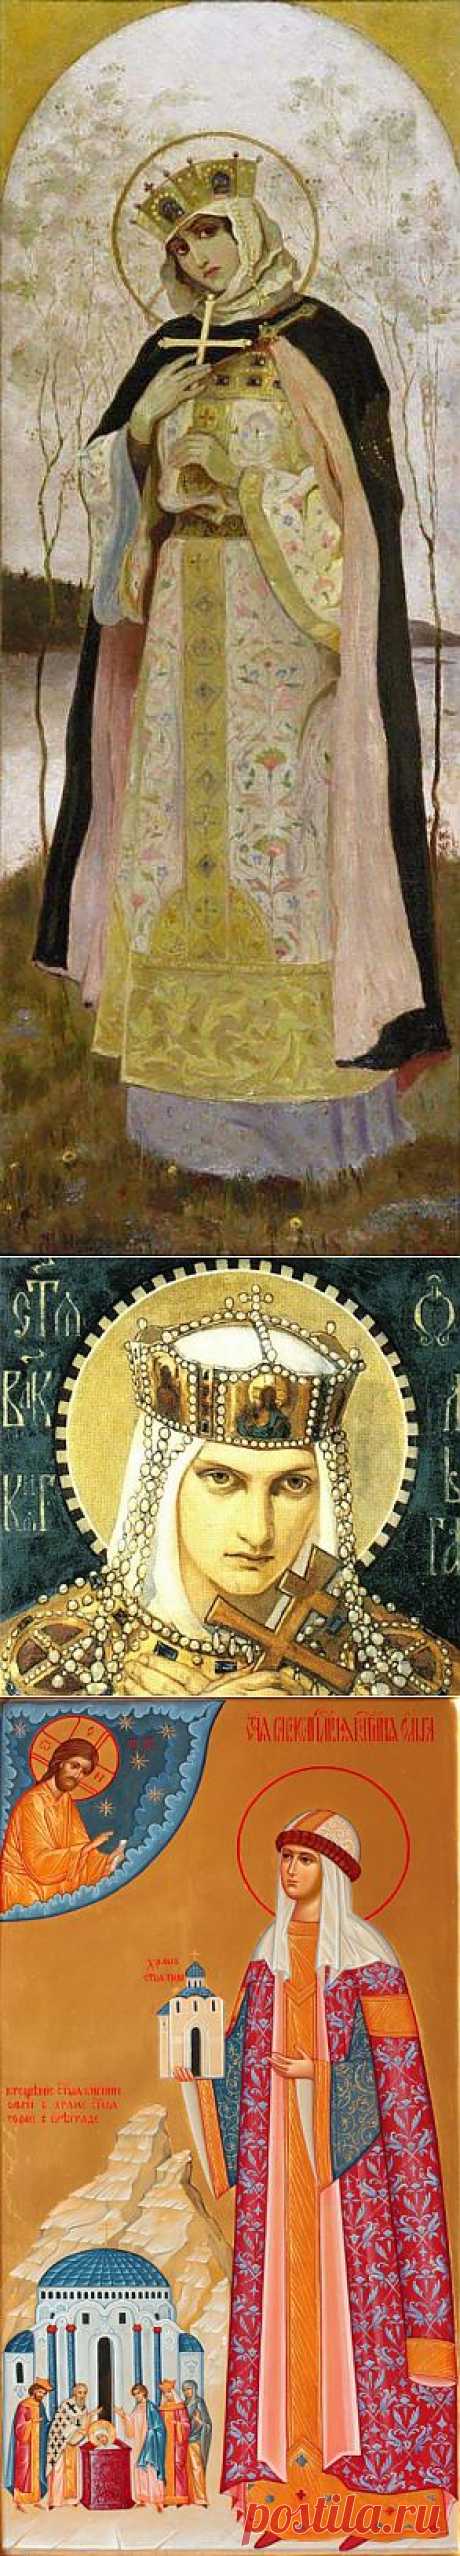 Святая княгиня Ольга (житие, изображения, памятники)